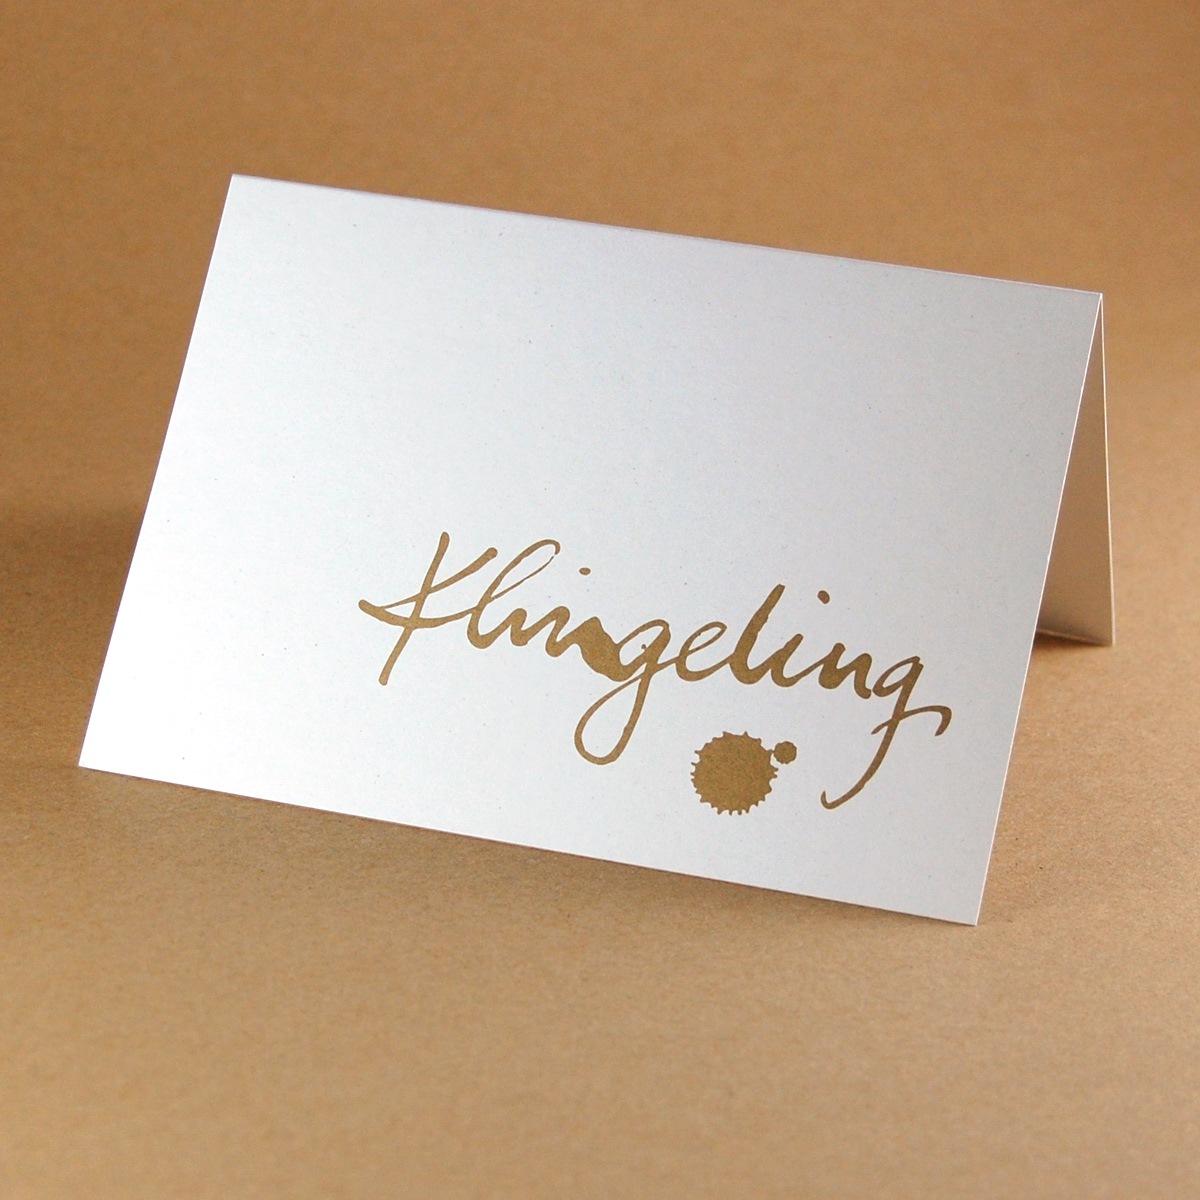 Klingeling, goldene Recycling-Weihnachtskarten mit kurzem Text in Handschrift